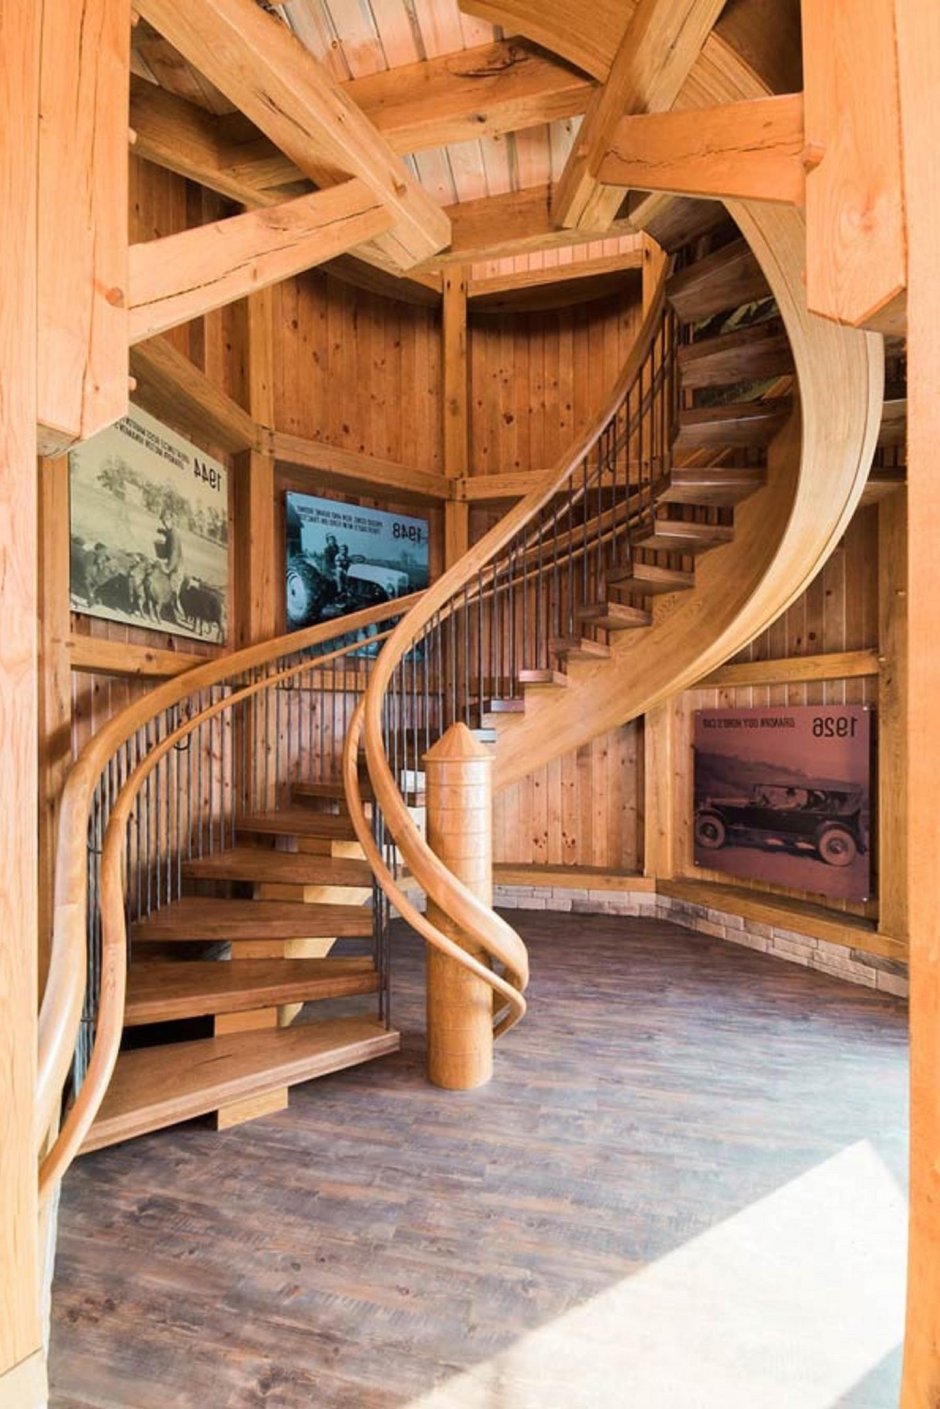 Лестница винтовая деревянная